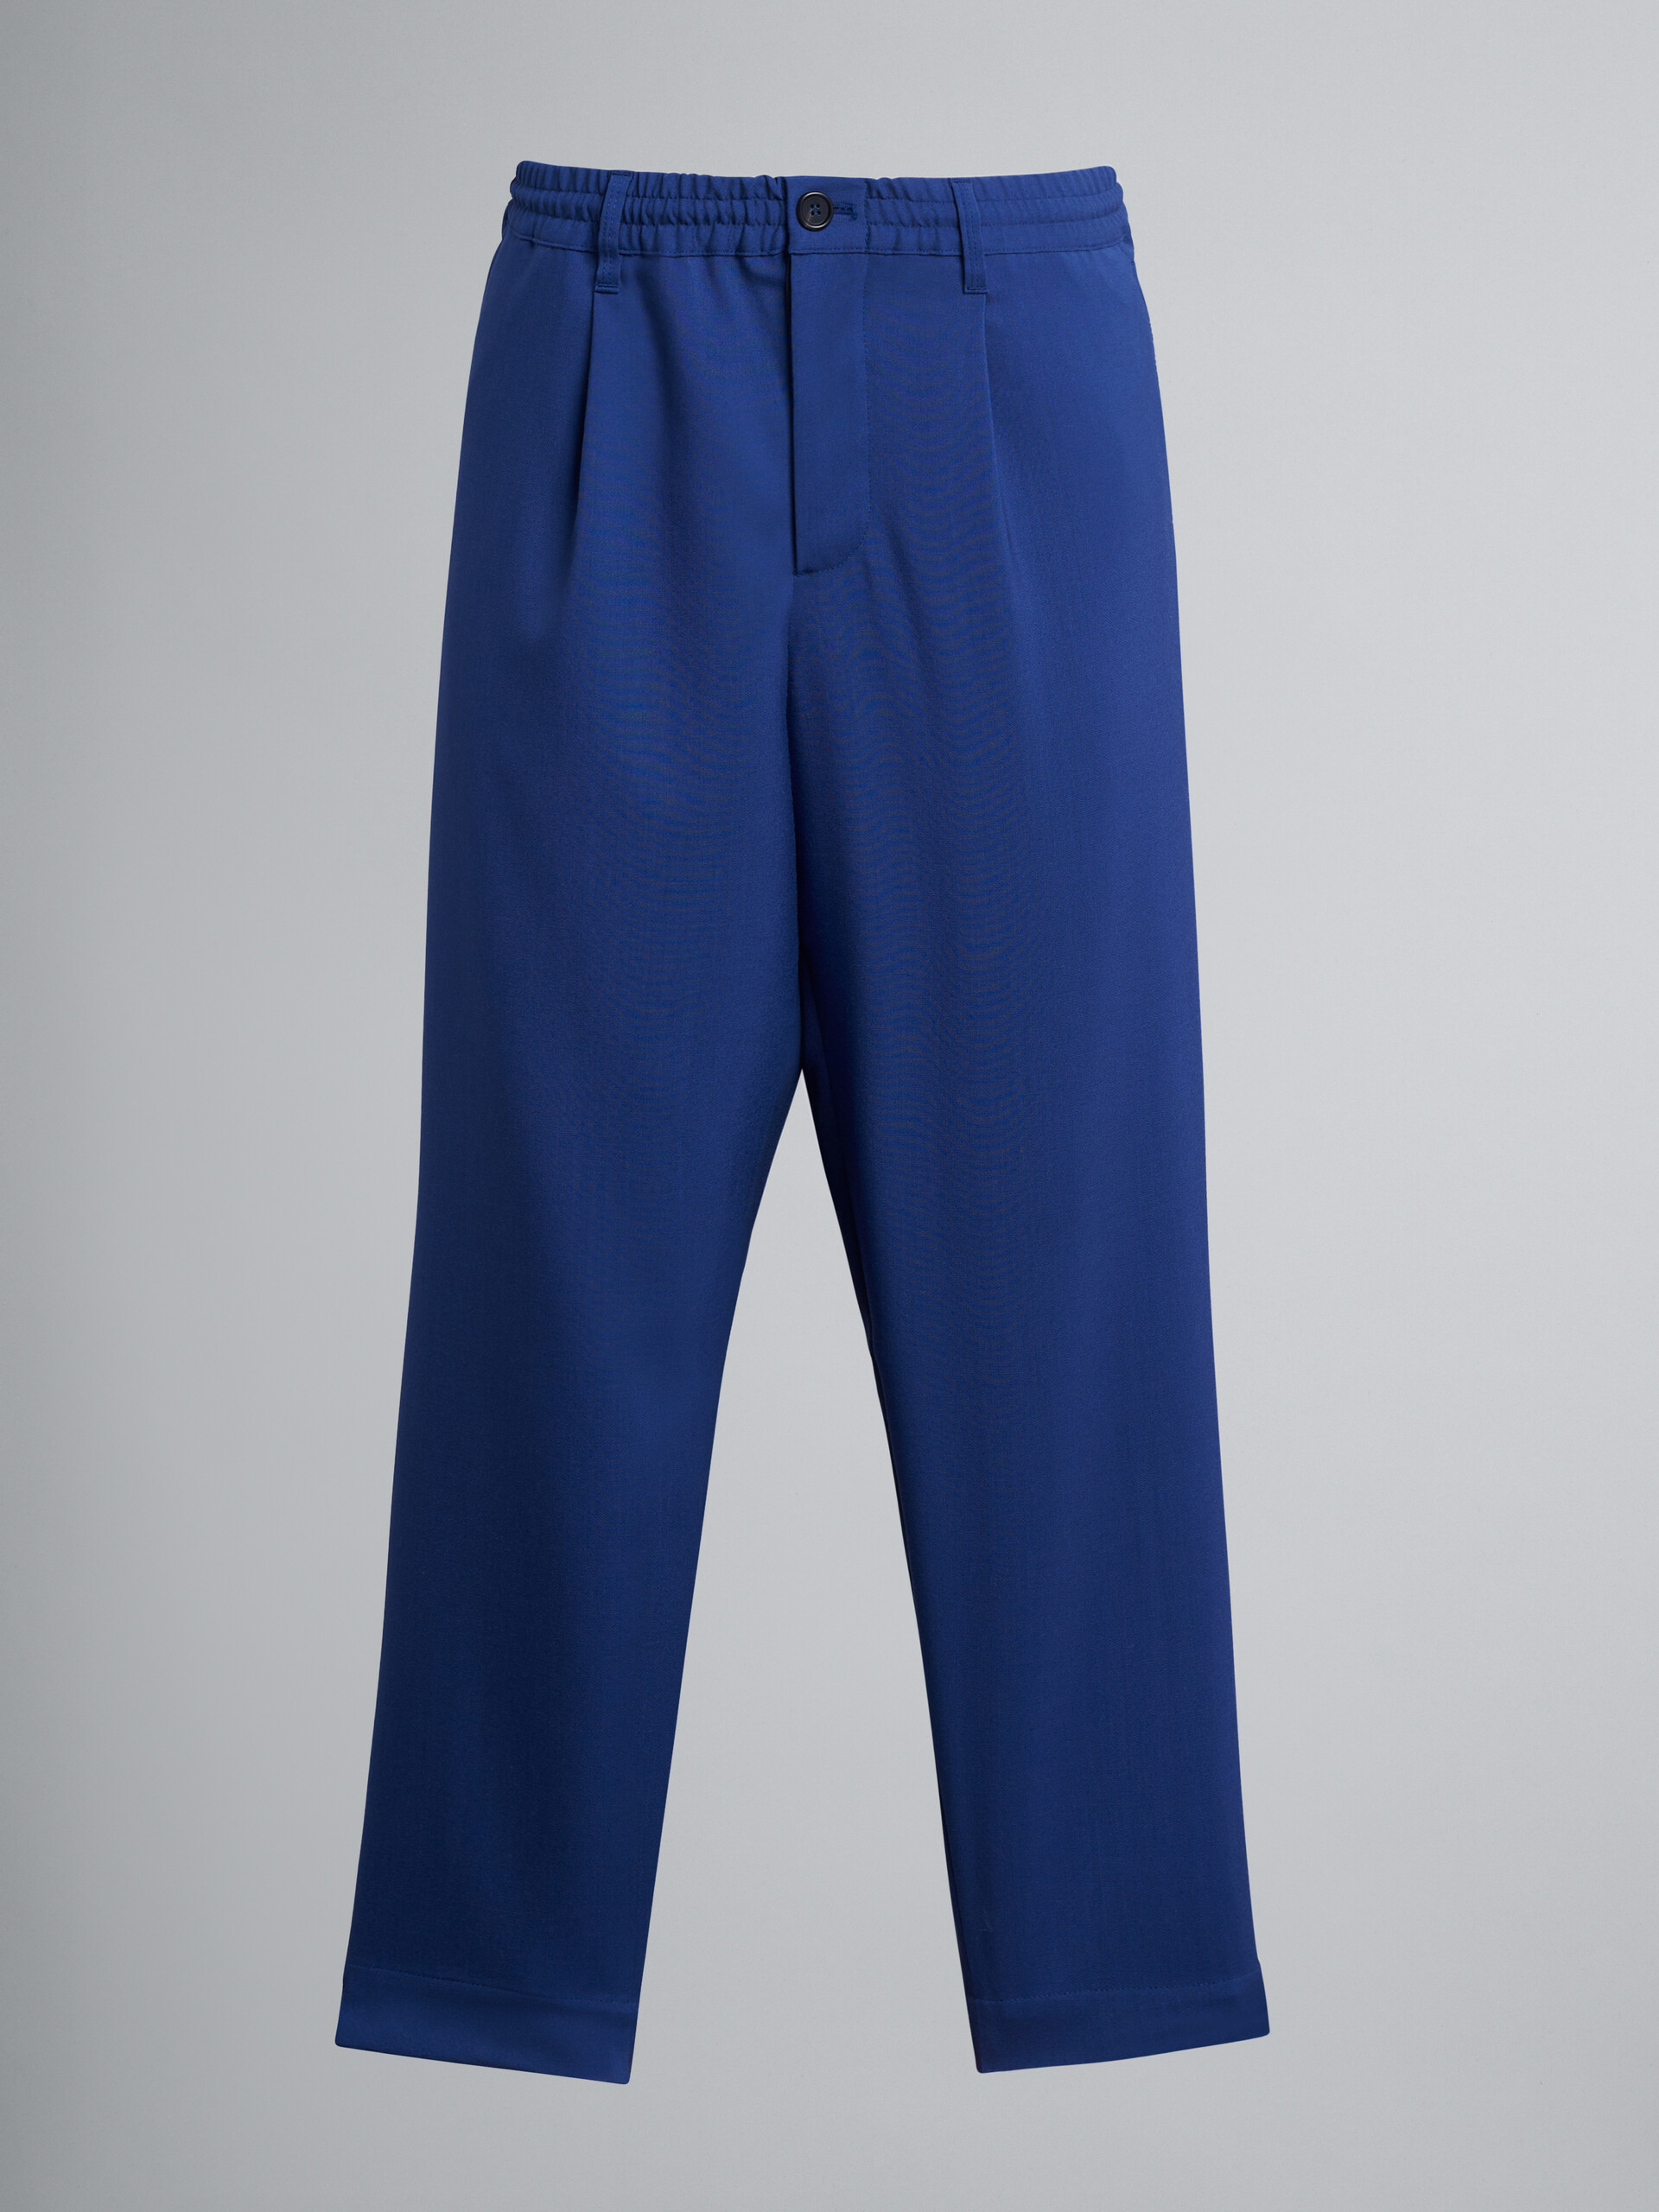 Blaue Hose aus Tropenwolle im Blockfarbendesign - Hosen - Image 1